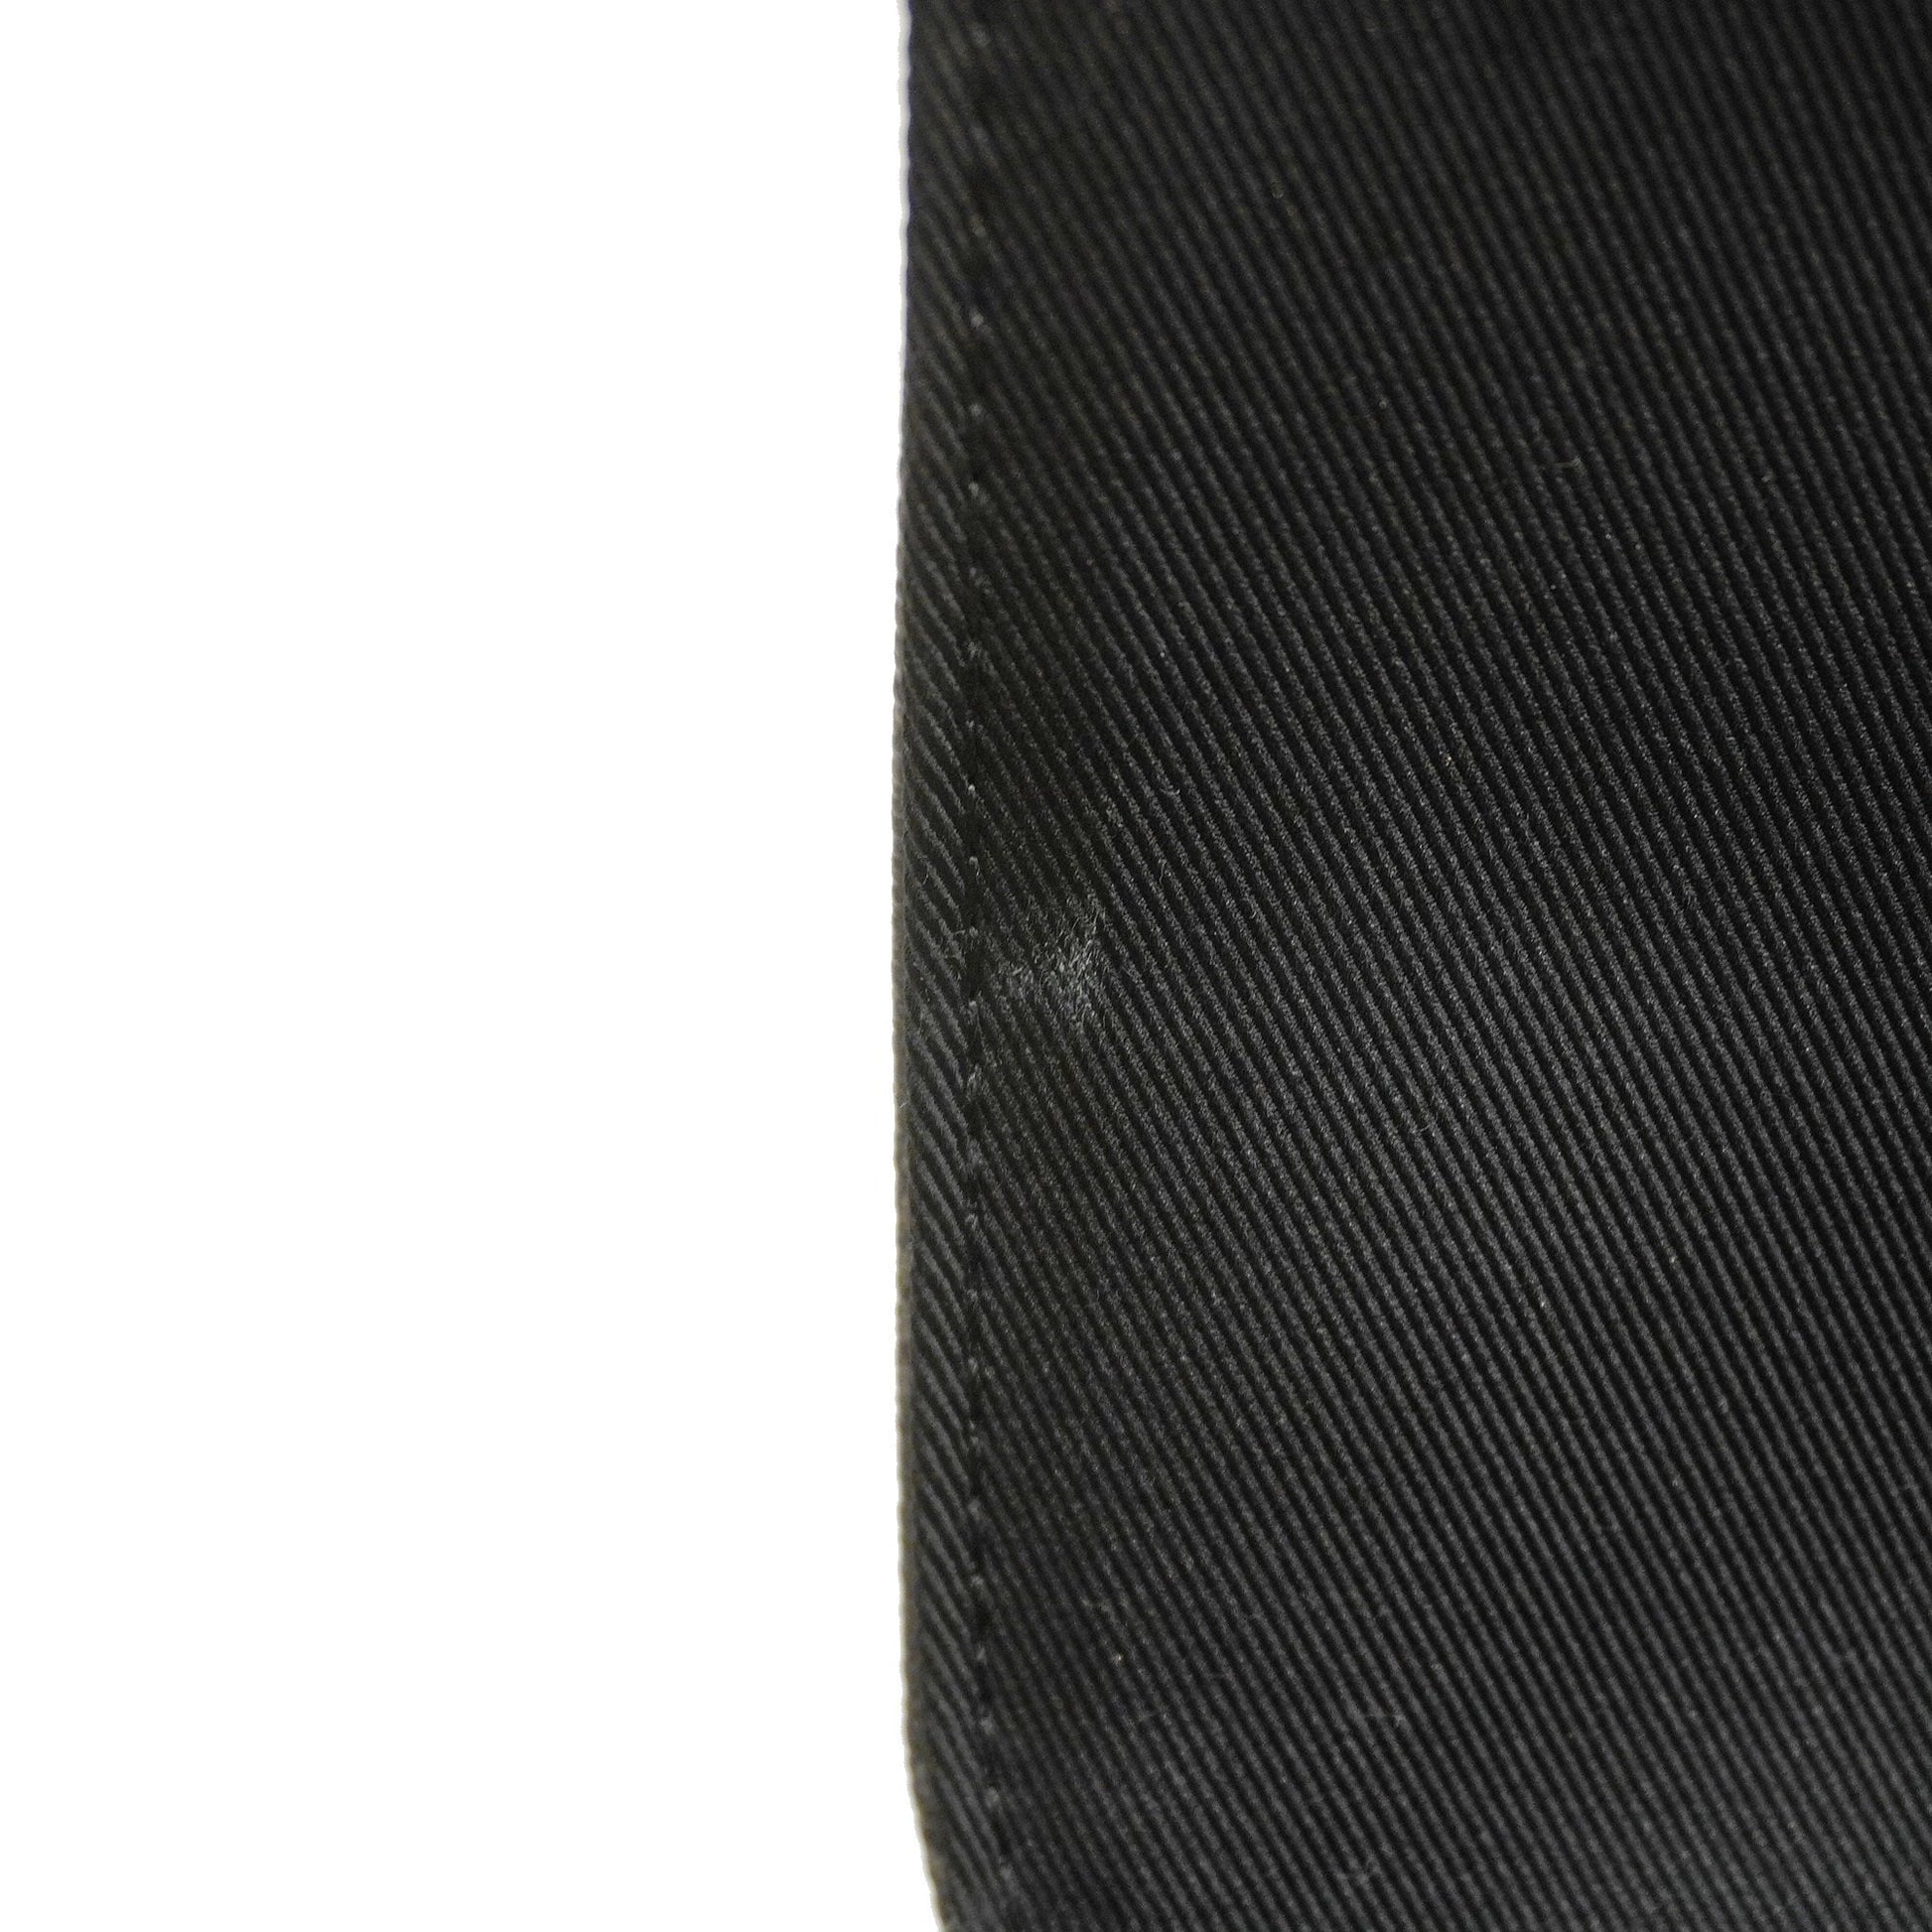 3ac2267] Auth Louis Vuitton Shoulder Bag Damier Graphite District